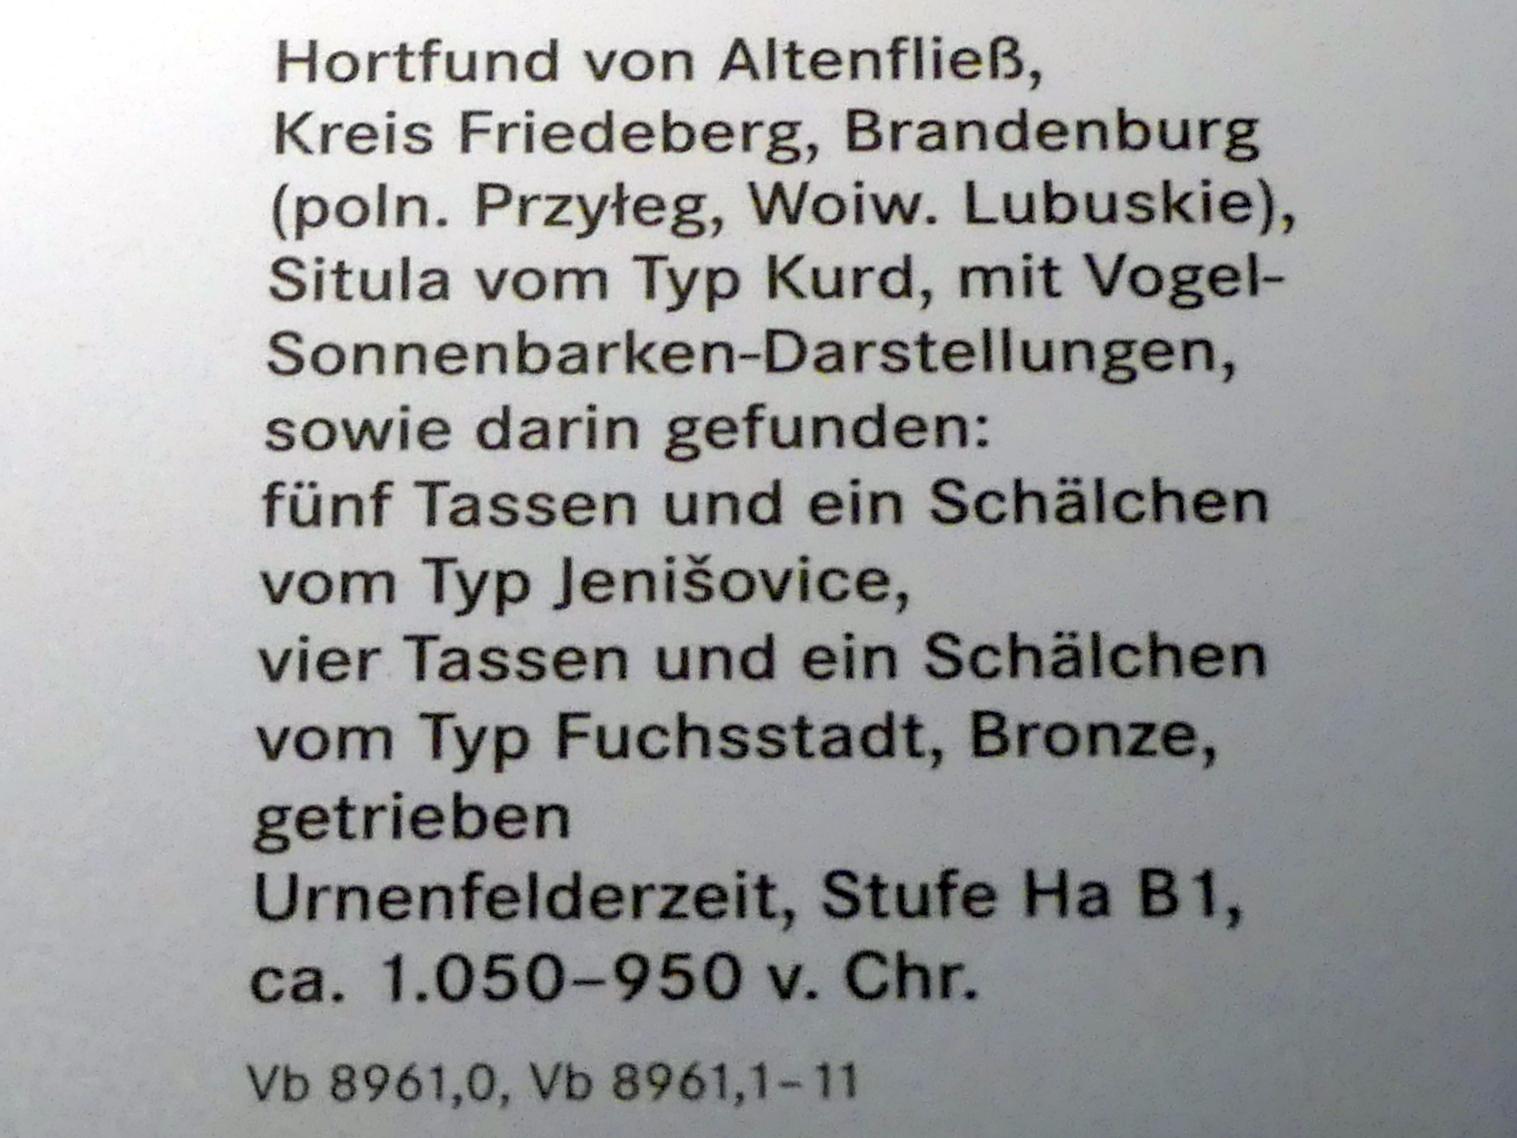 Vier Tassen und eine Schälchen vom Typ Fuchsstadt, Hallstattzeit B1, Urnenfelderzeit, 1400 - 700 v. Chr., 1050 - 950 v. Chr., Bild 2/2